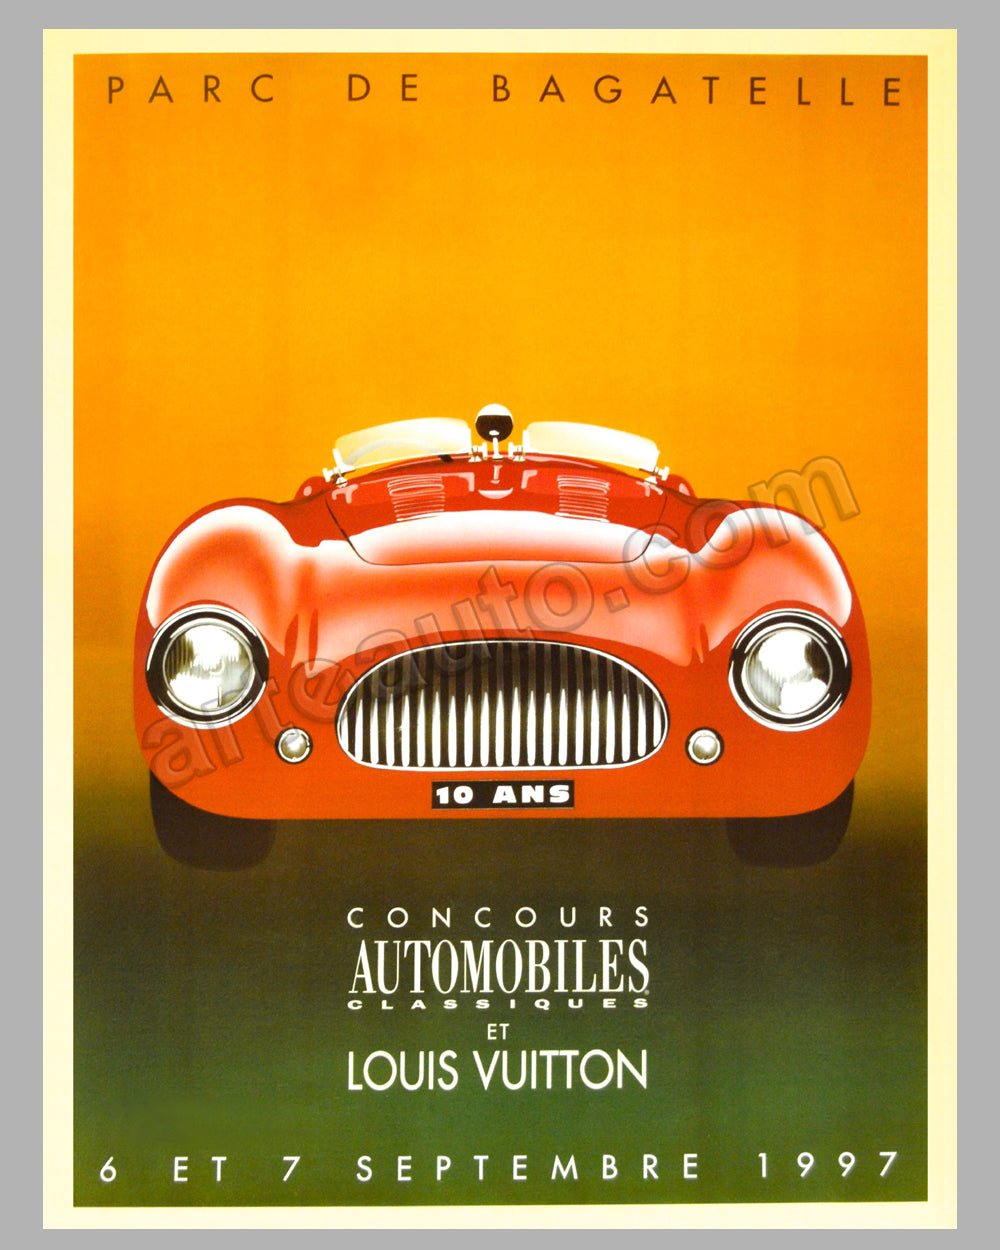 Razzia (Gérard Courbouleix–Dénériaz) - 1992 Original poster by Razzia -  Classic Automobiles and Louis Vuitton For Sale at 1stDibs